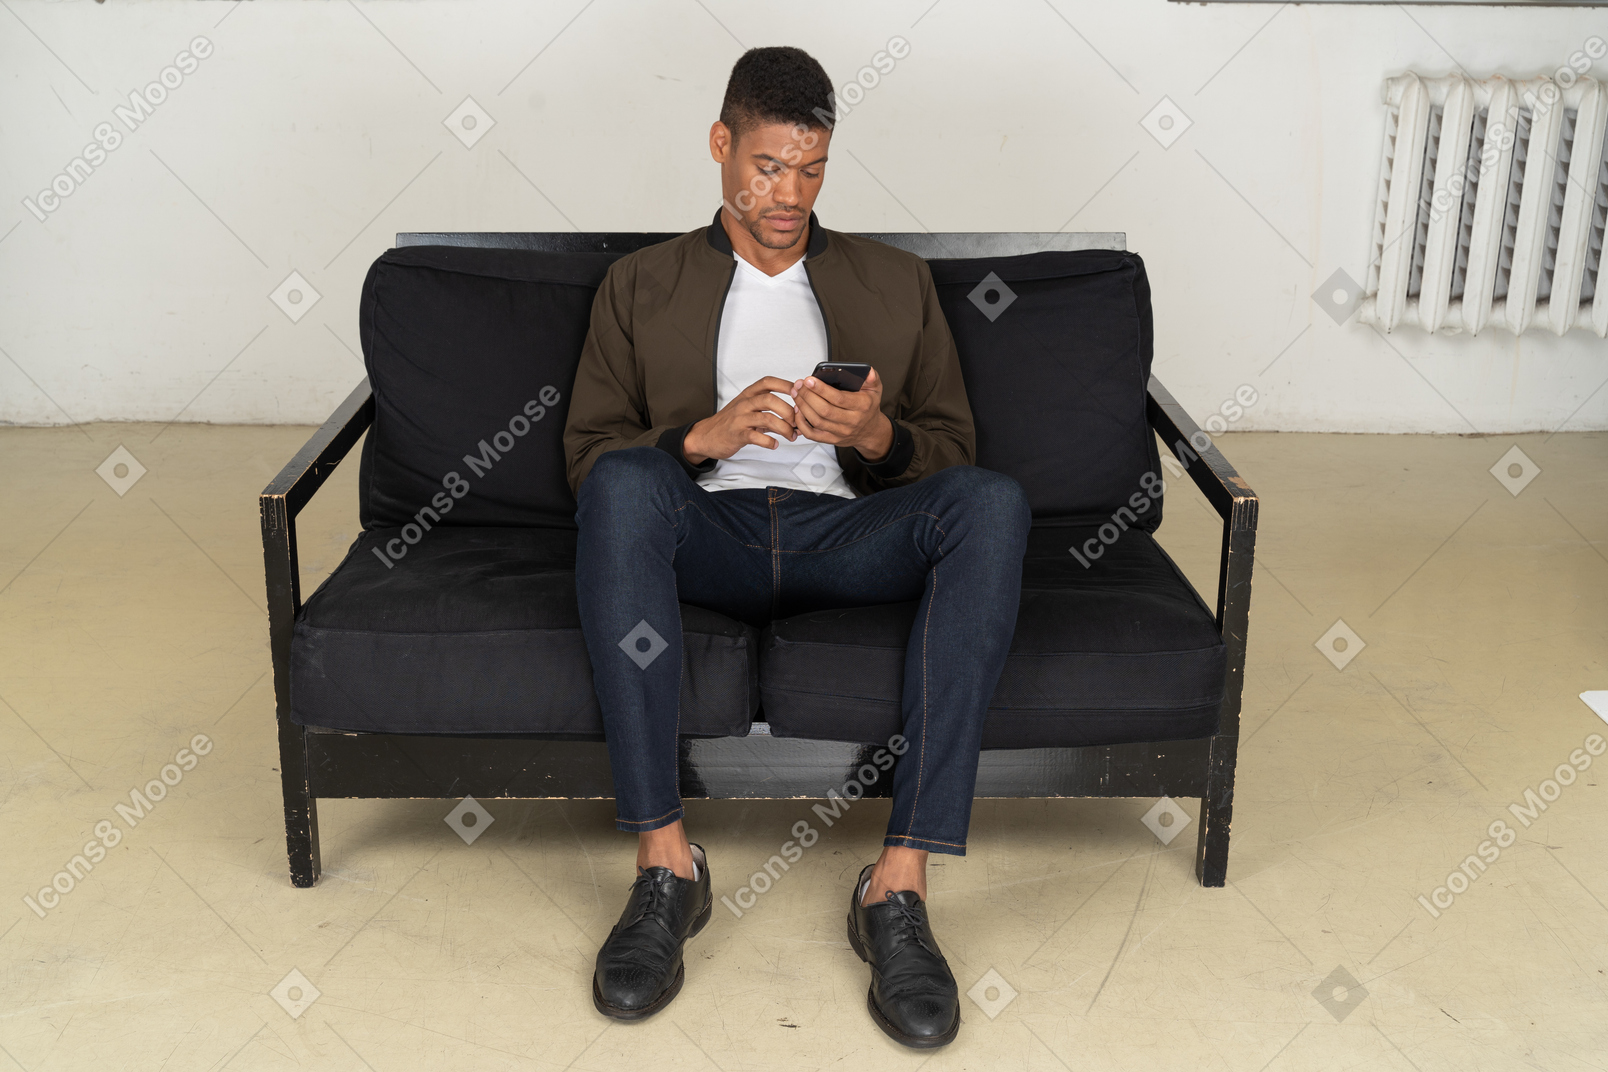 Vue de face d'un jeune homme assis sur un canapé et regardant son téléphone